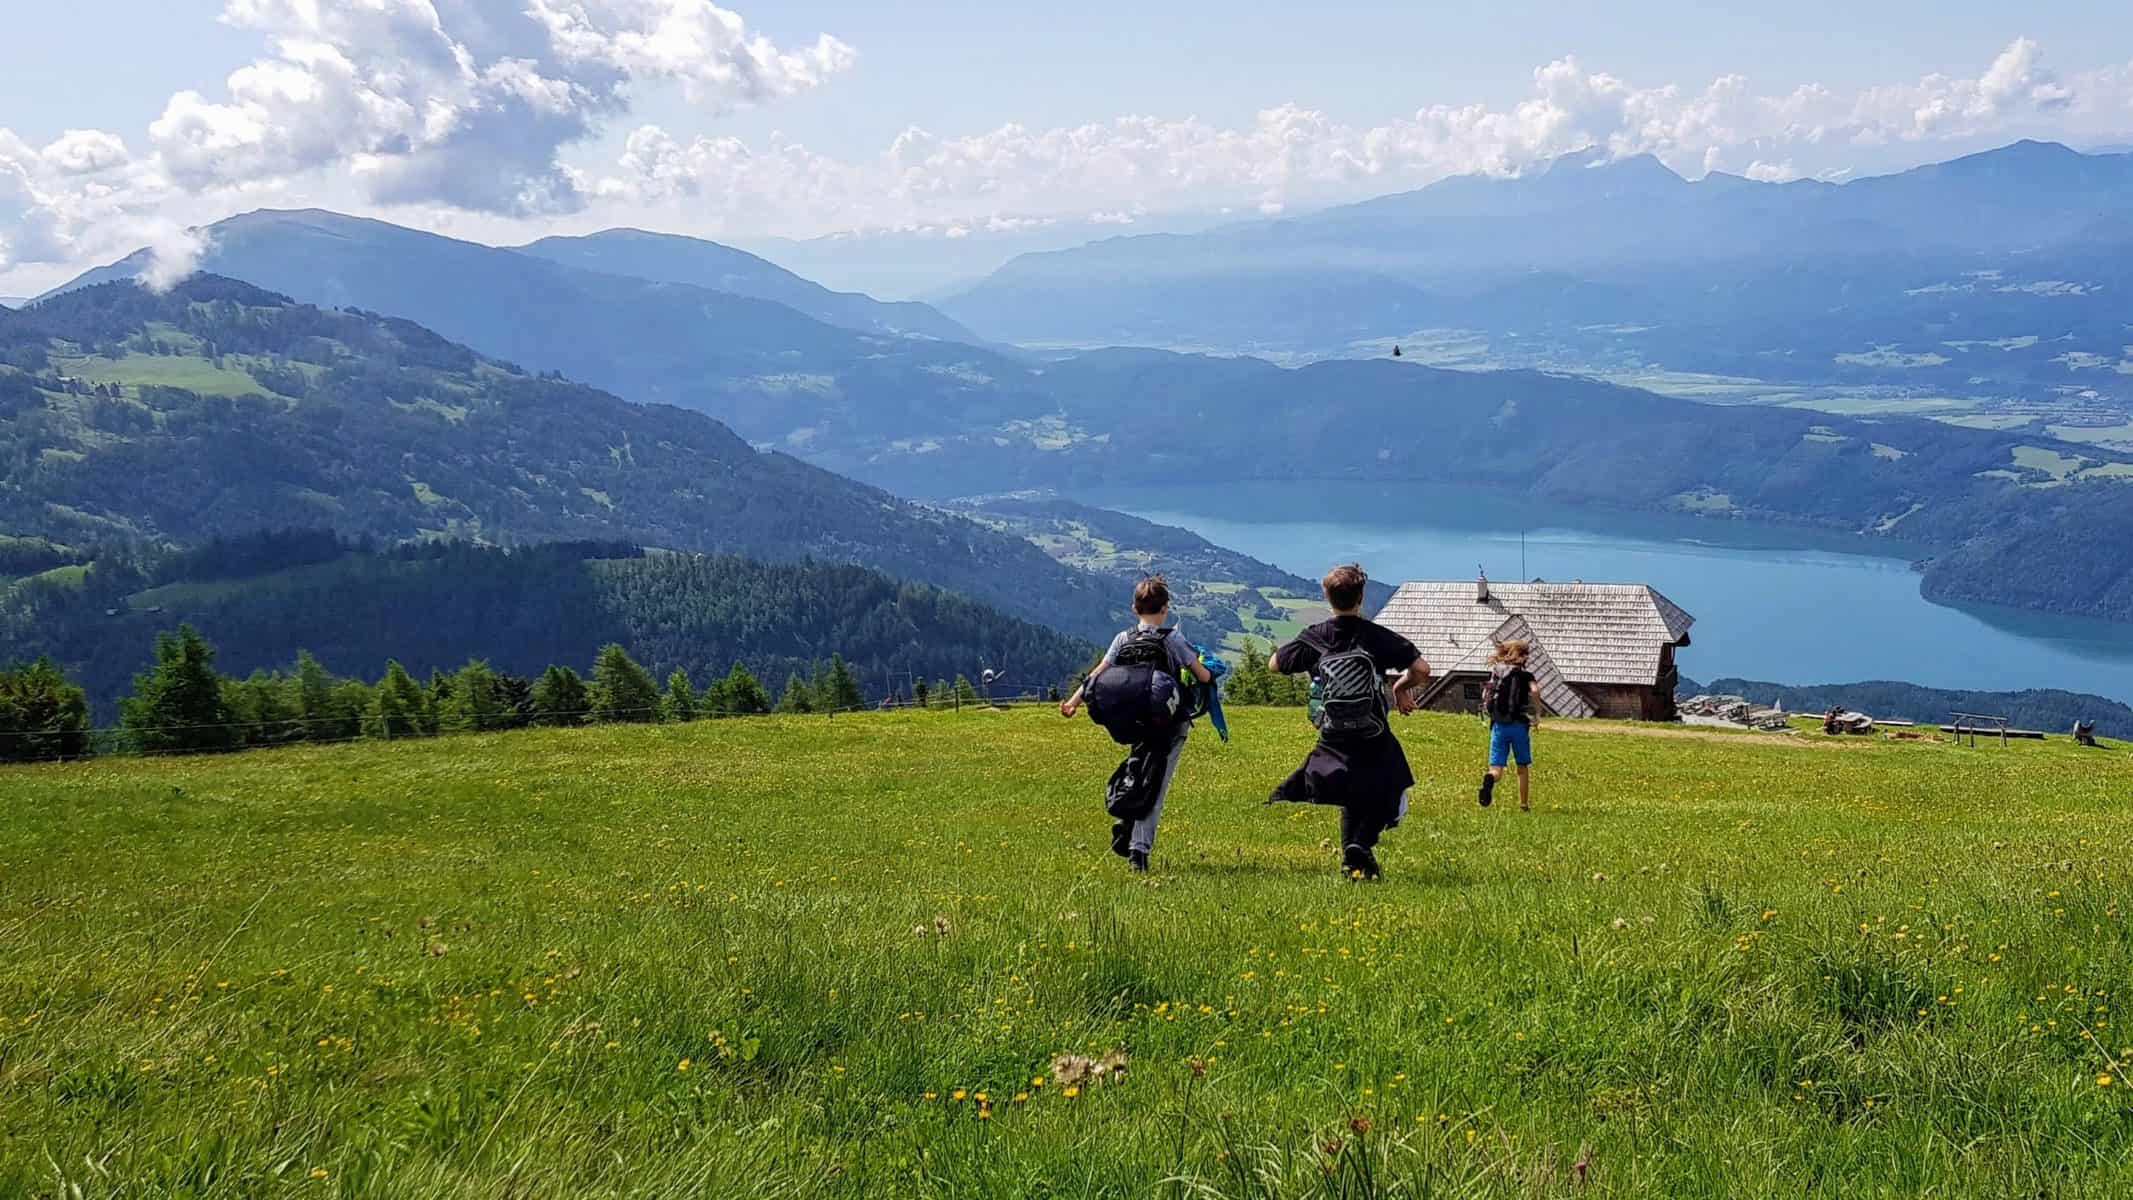 Kinder bei Wanderung in Kärnten mit See, Berg, Hütte und Wiese im Sommer - Tipps für Familienaktivitäten